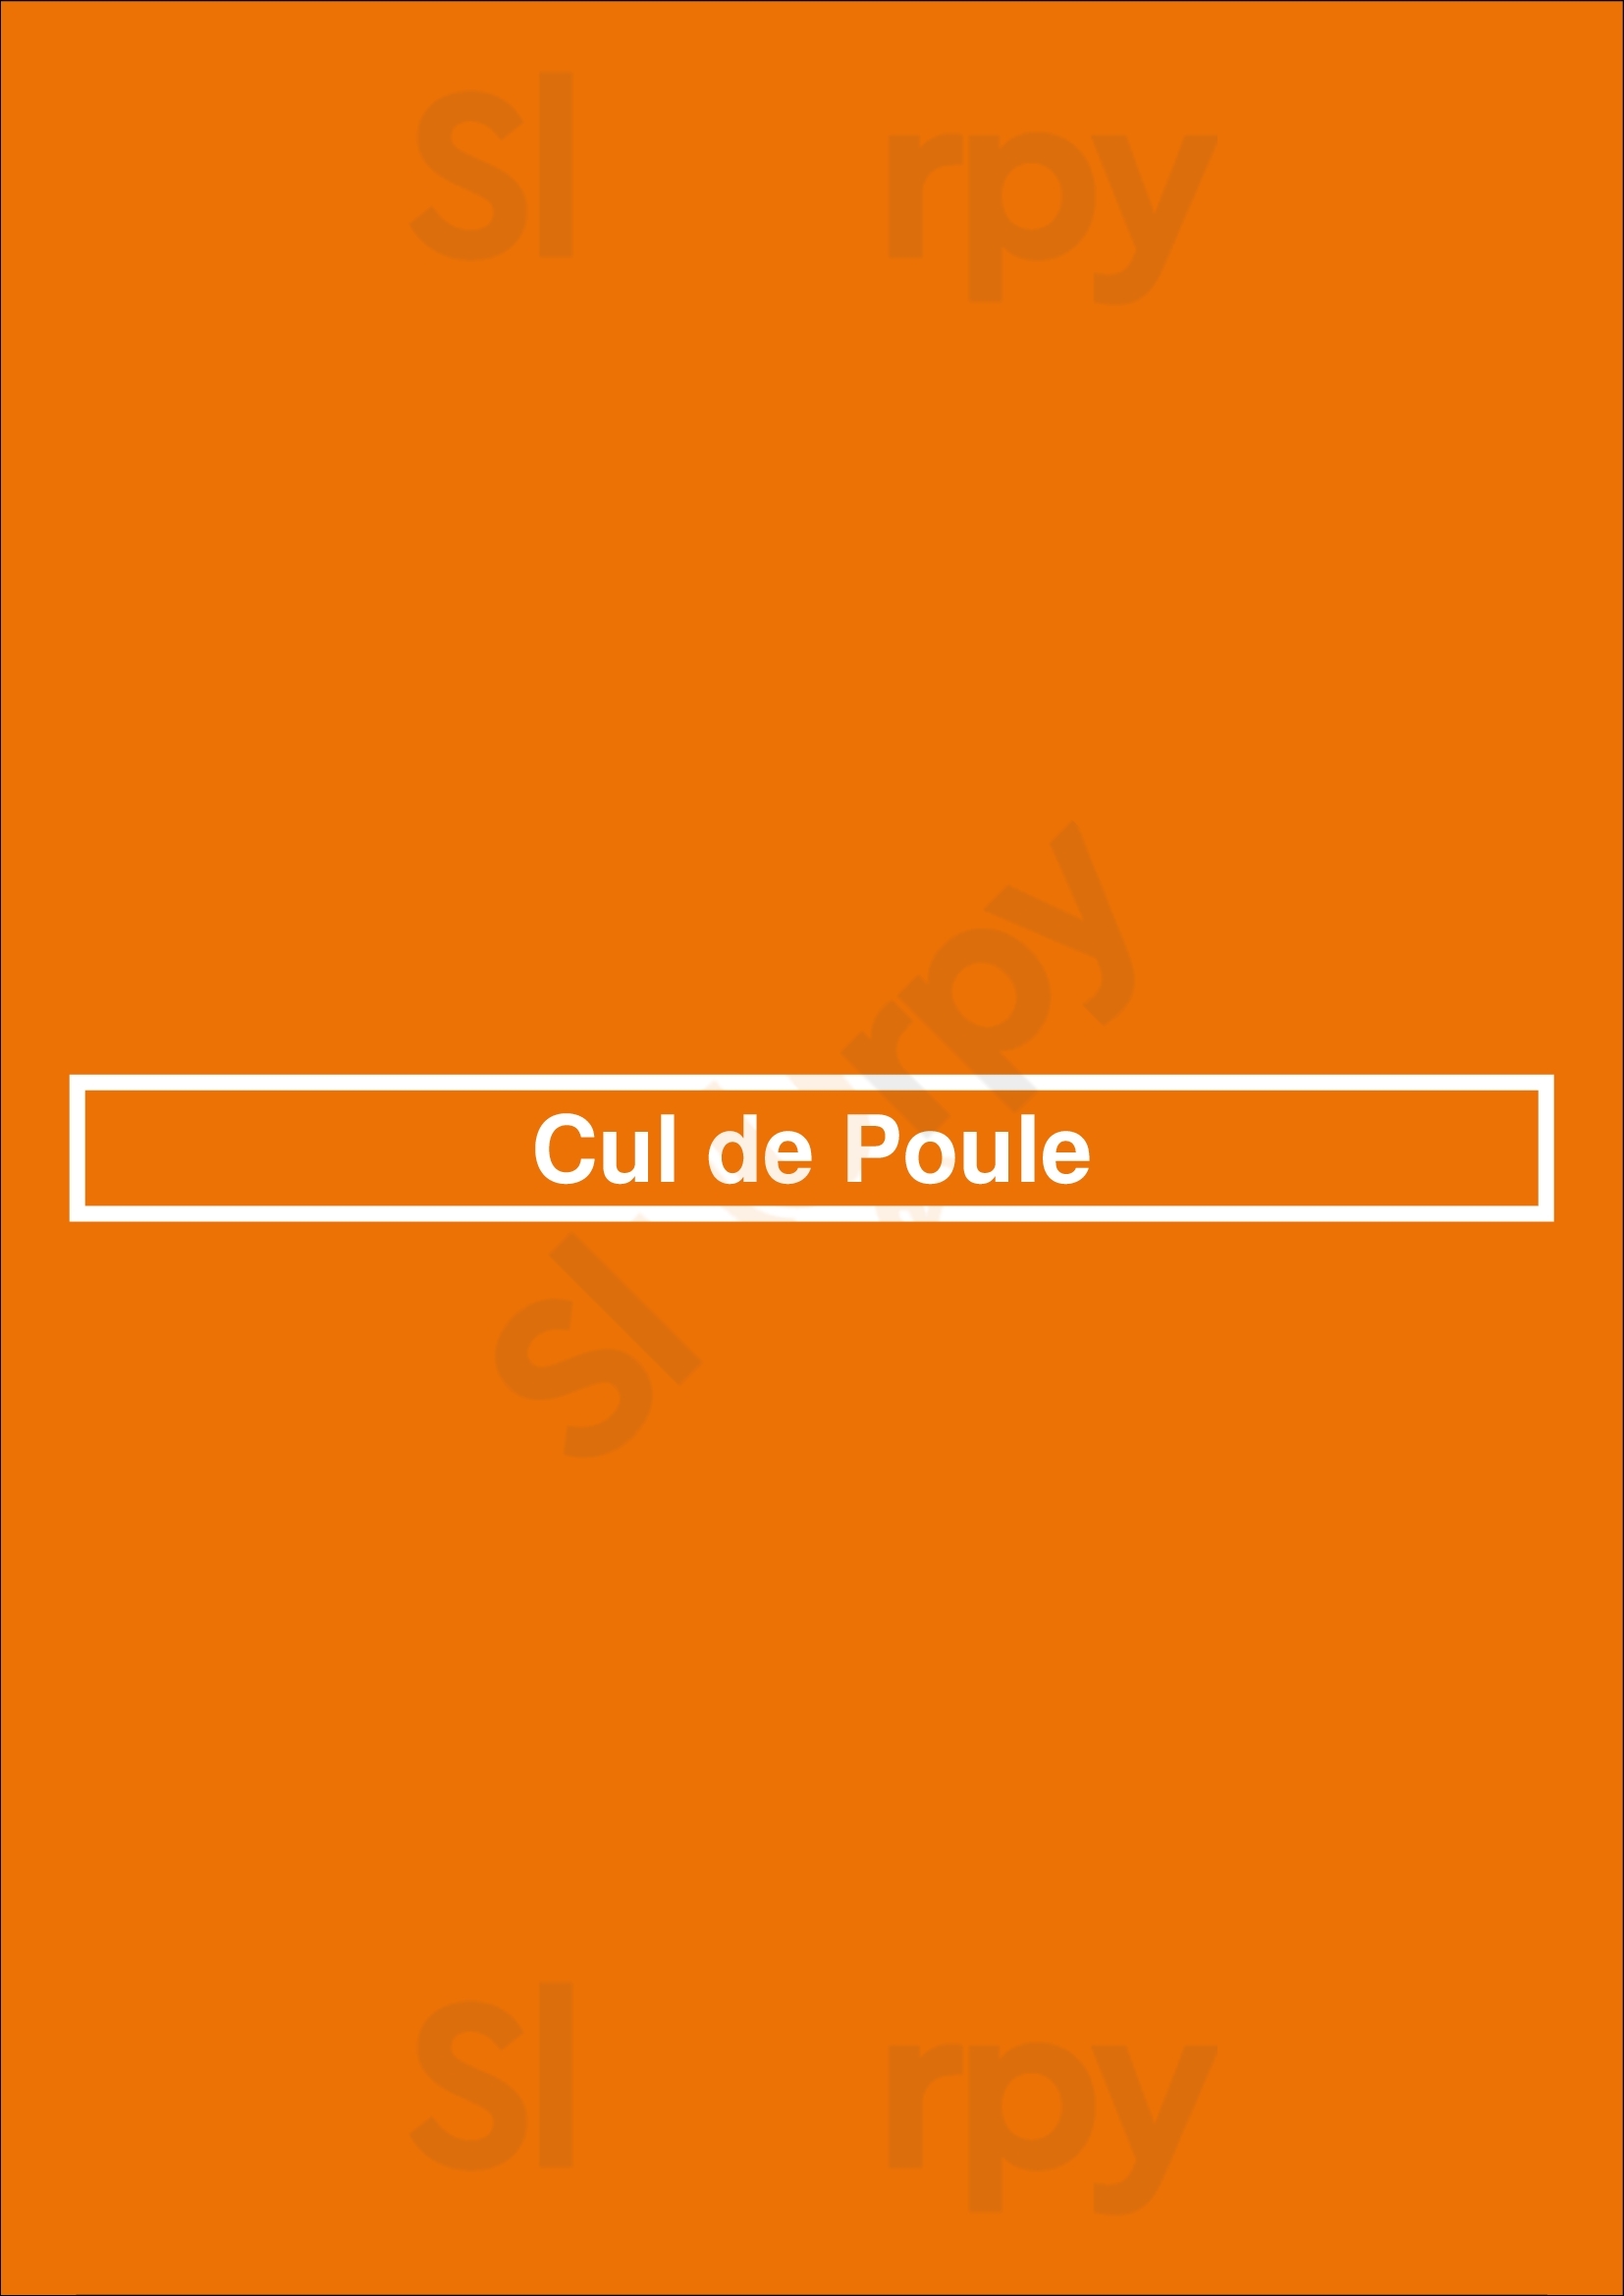 Cul De Poule Binche Menu - 1